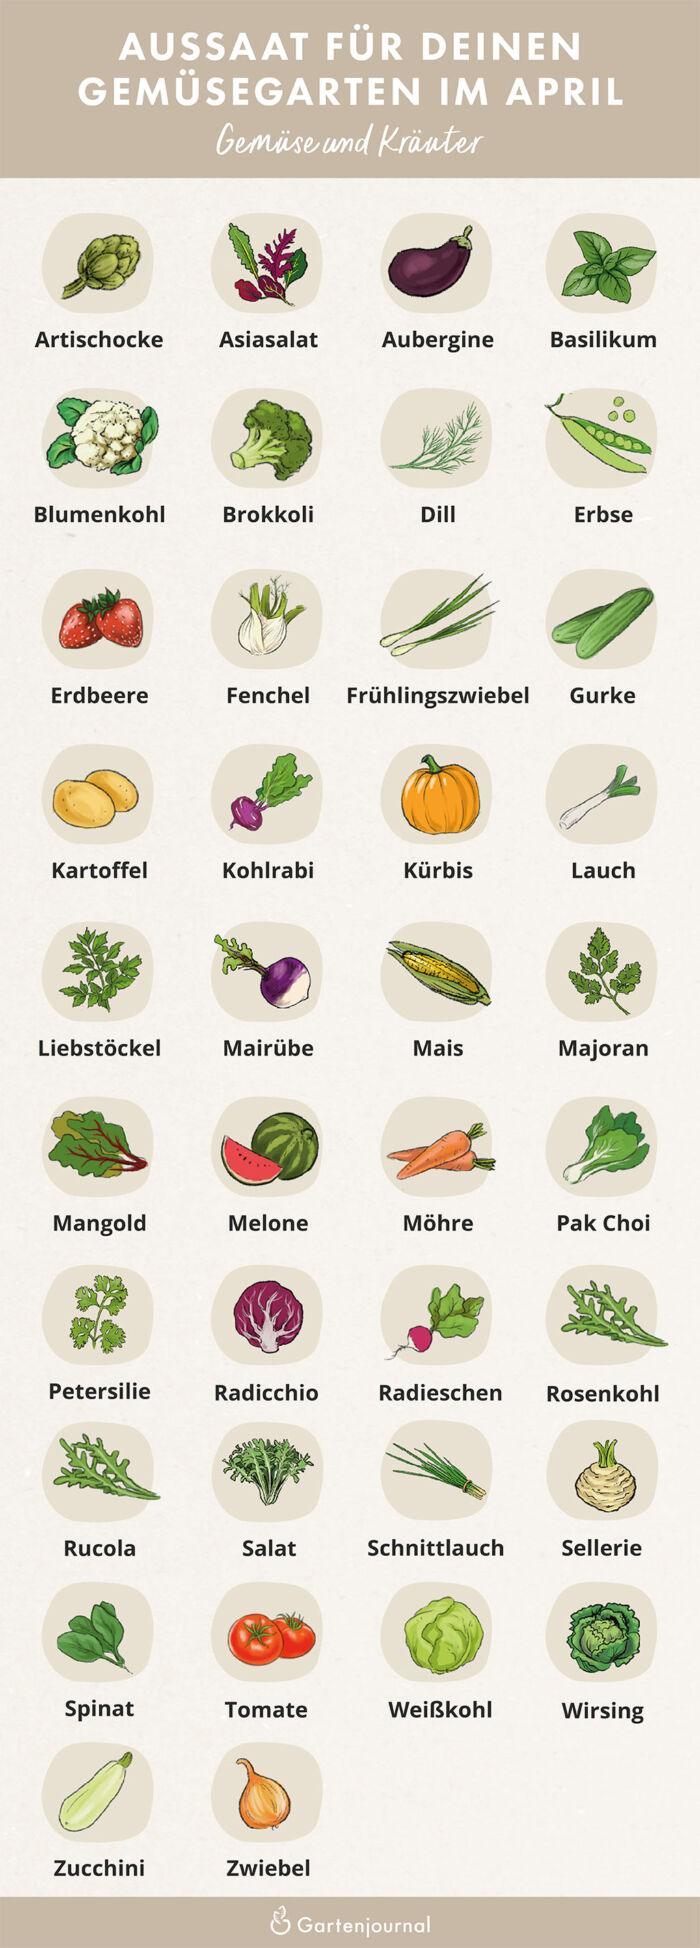 Illustrierter Gartenkalender der zeigt, welche Gemüse und Kräuter im April ausgesät werden